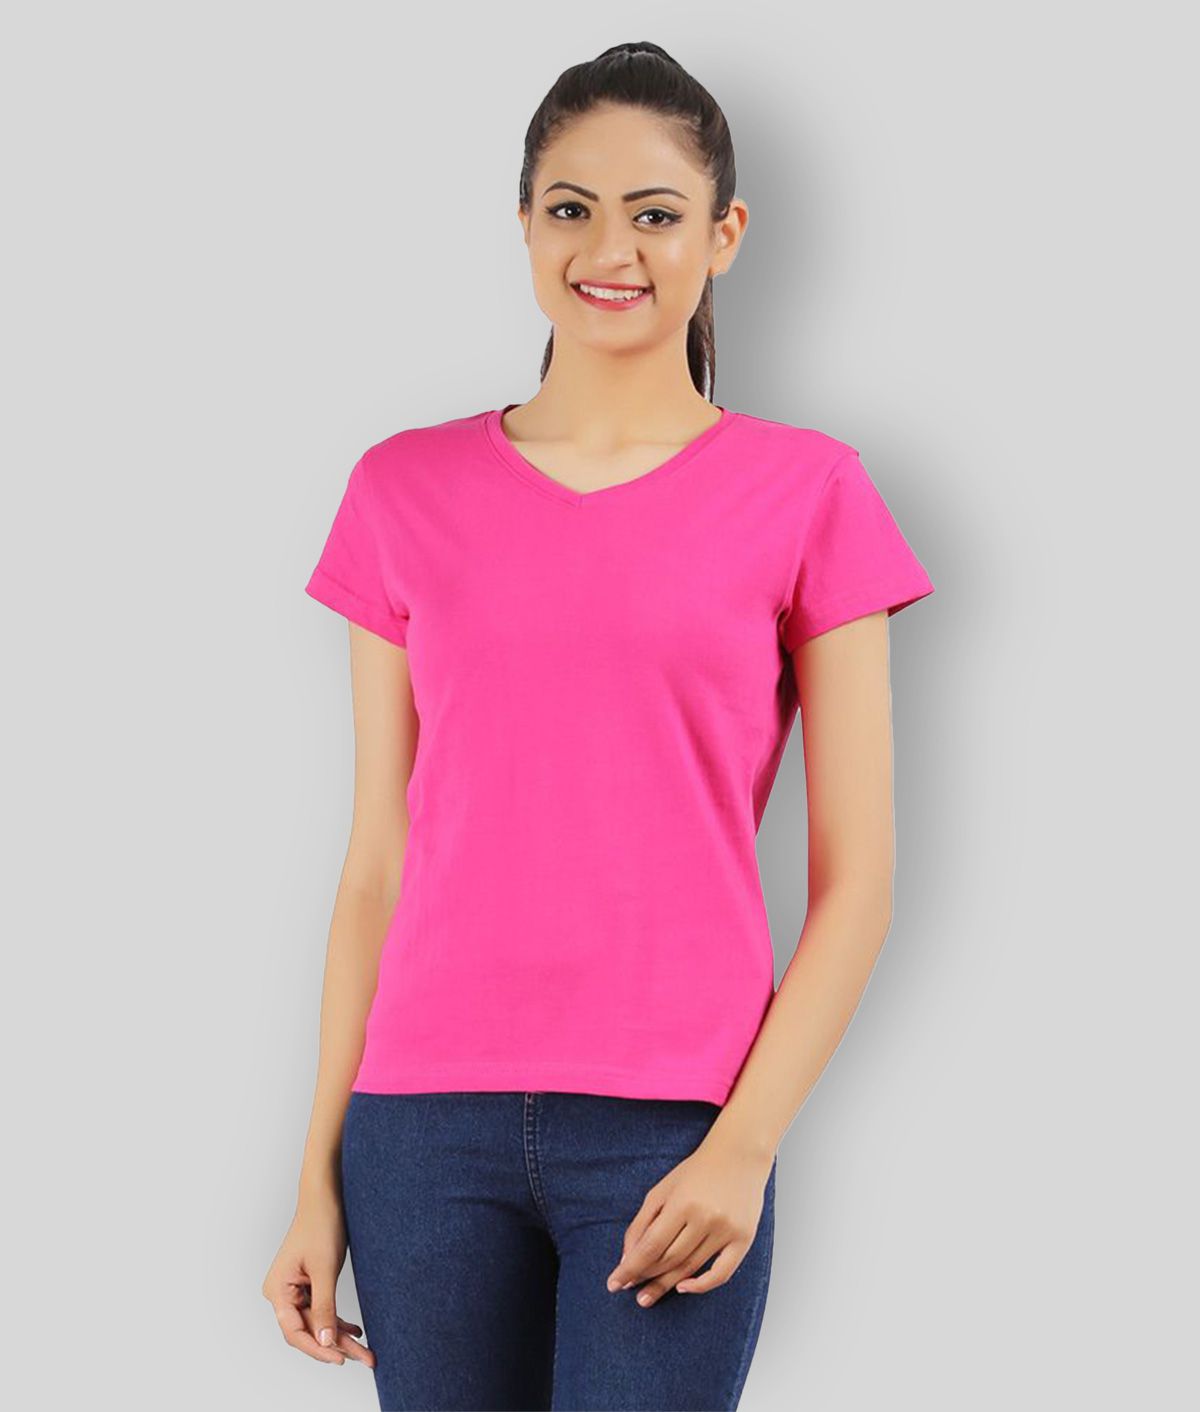     			Ap'pulse - Fluorescent Pink Cotton Regular Fit Women's T-Shirt ( Pack of 1 )